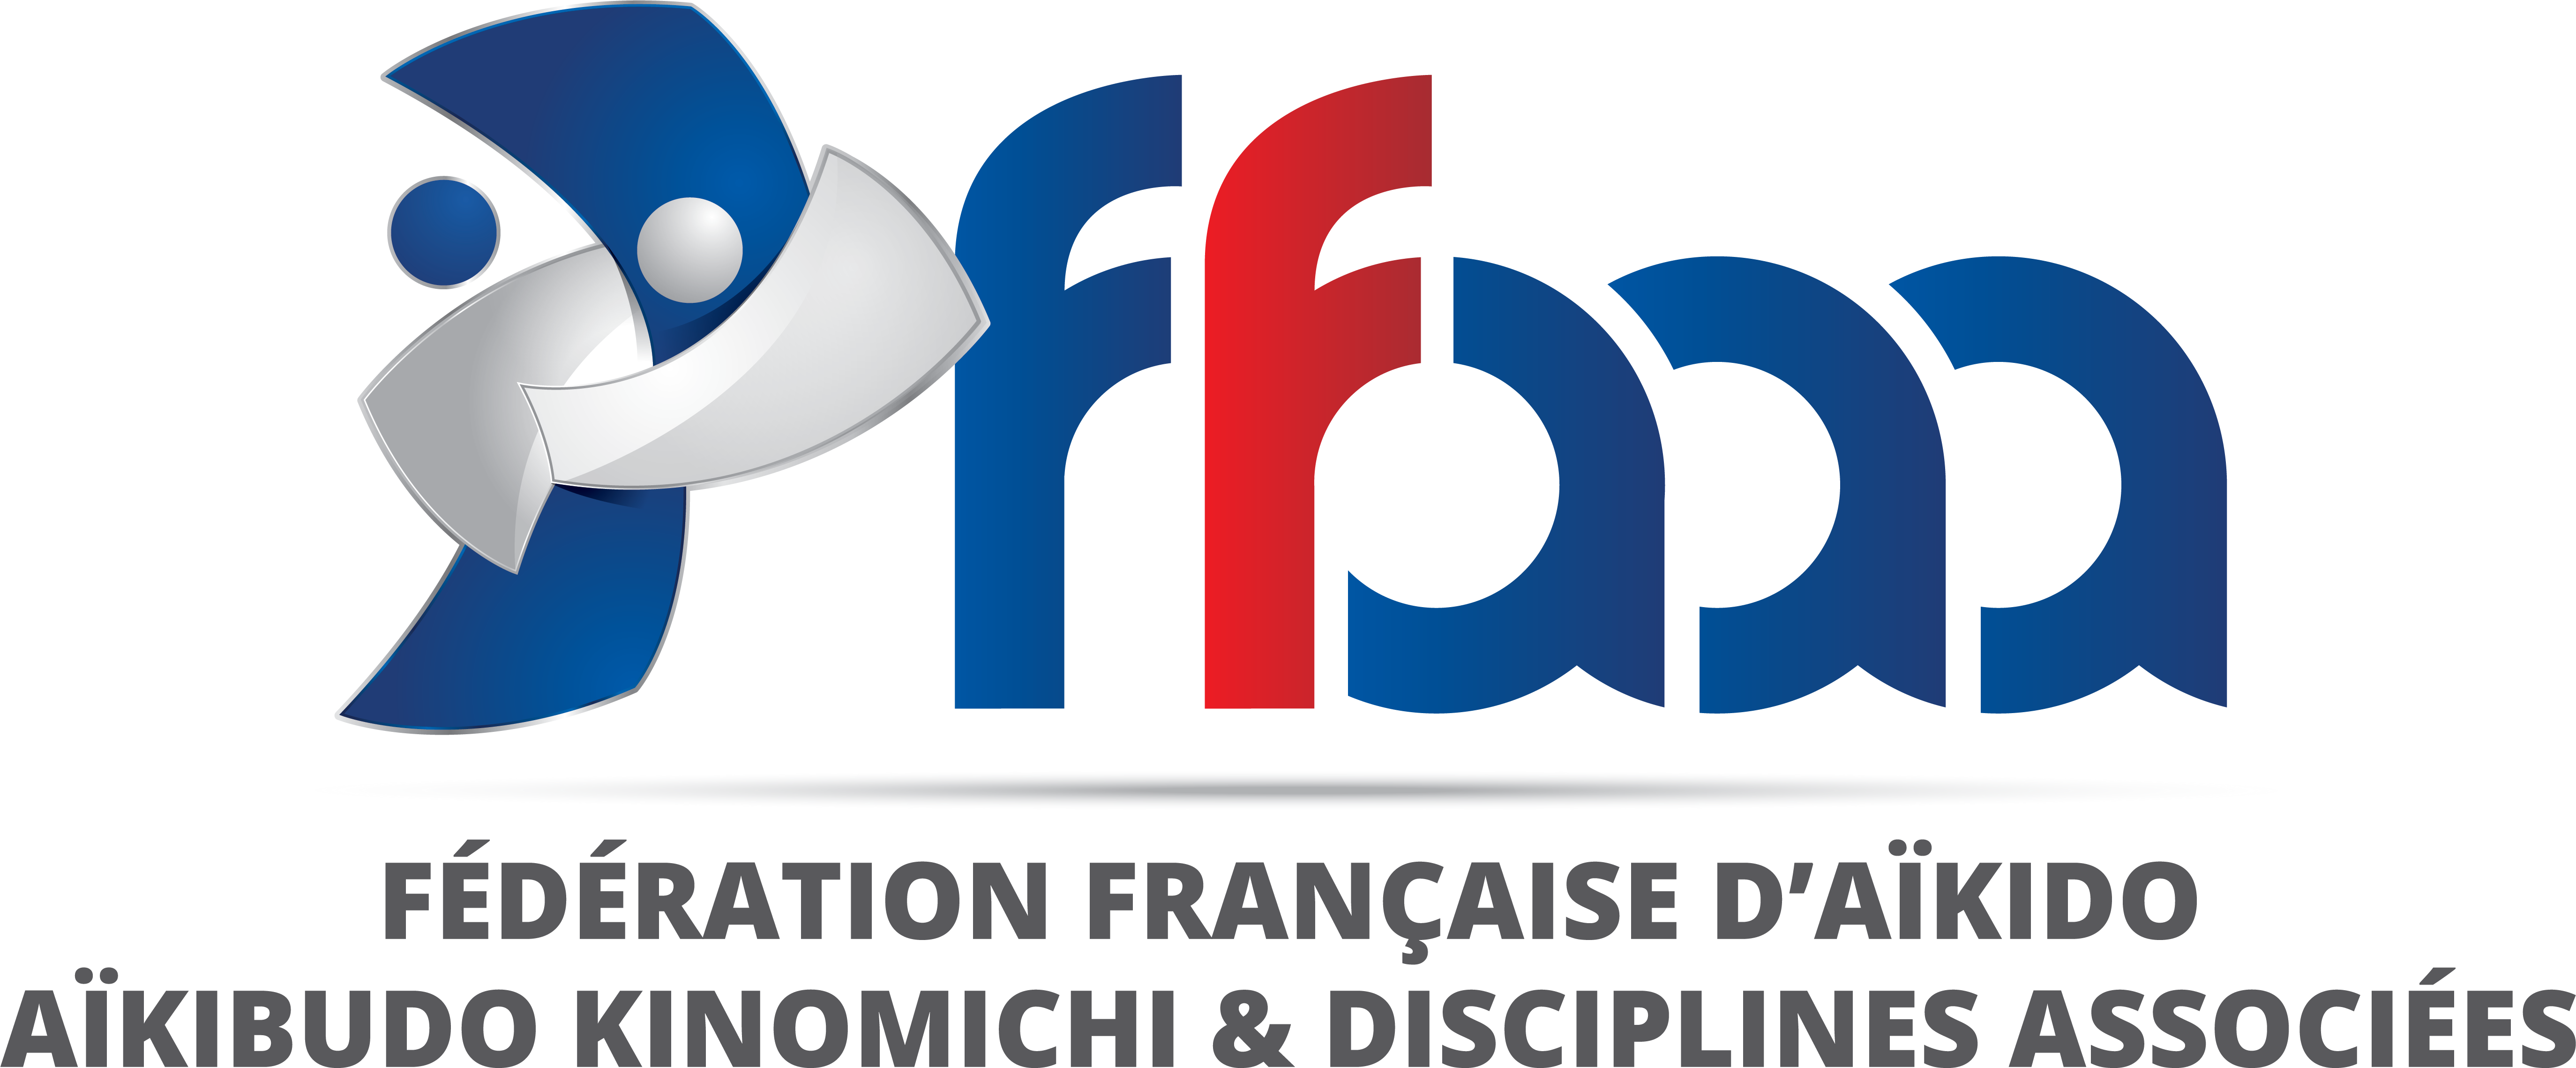 logo FFAAA